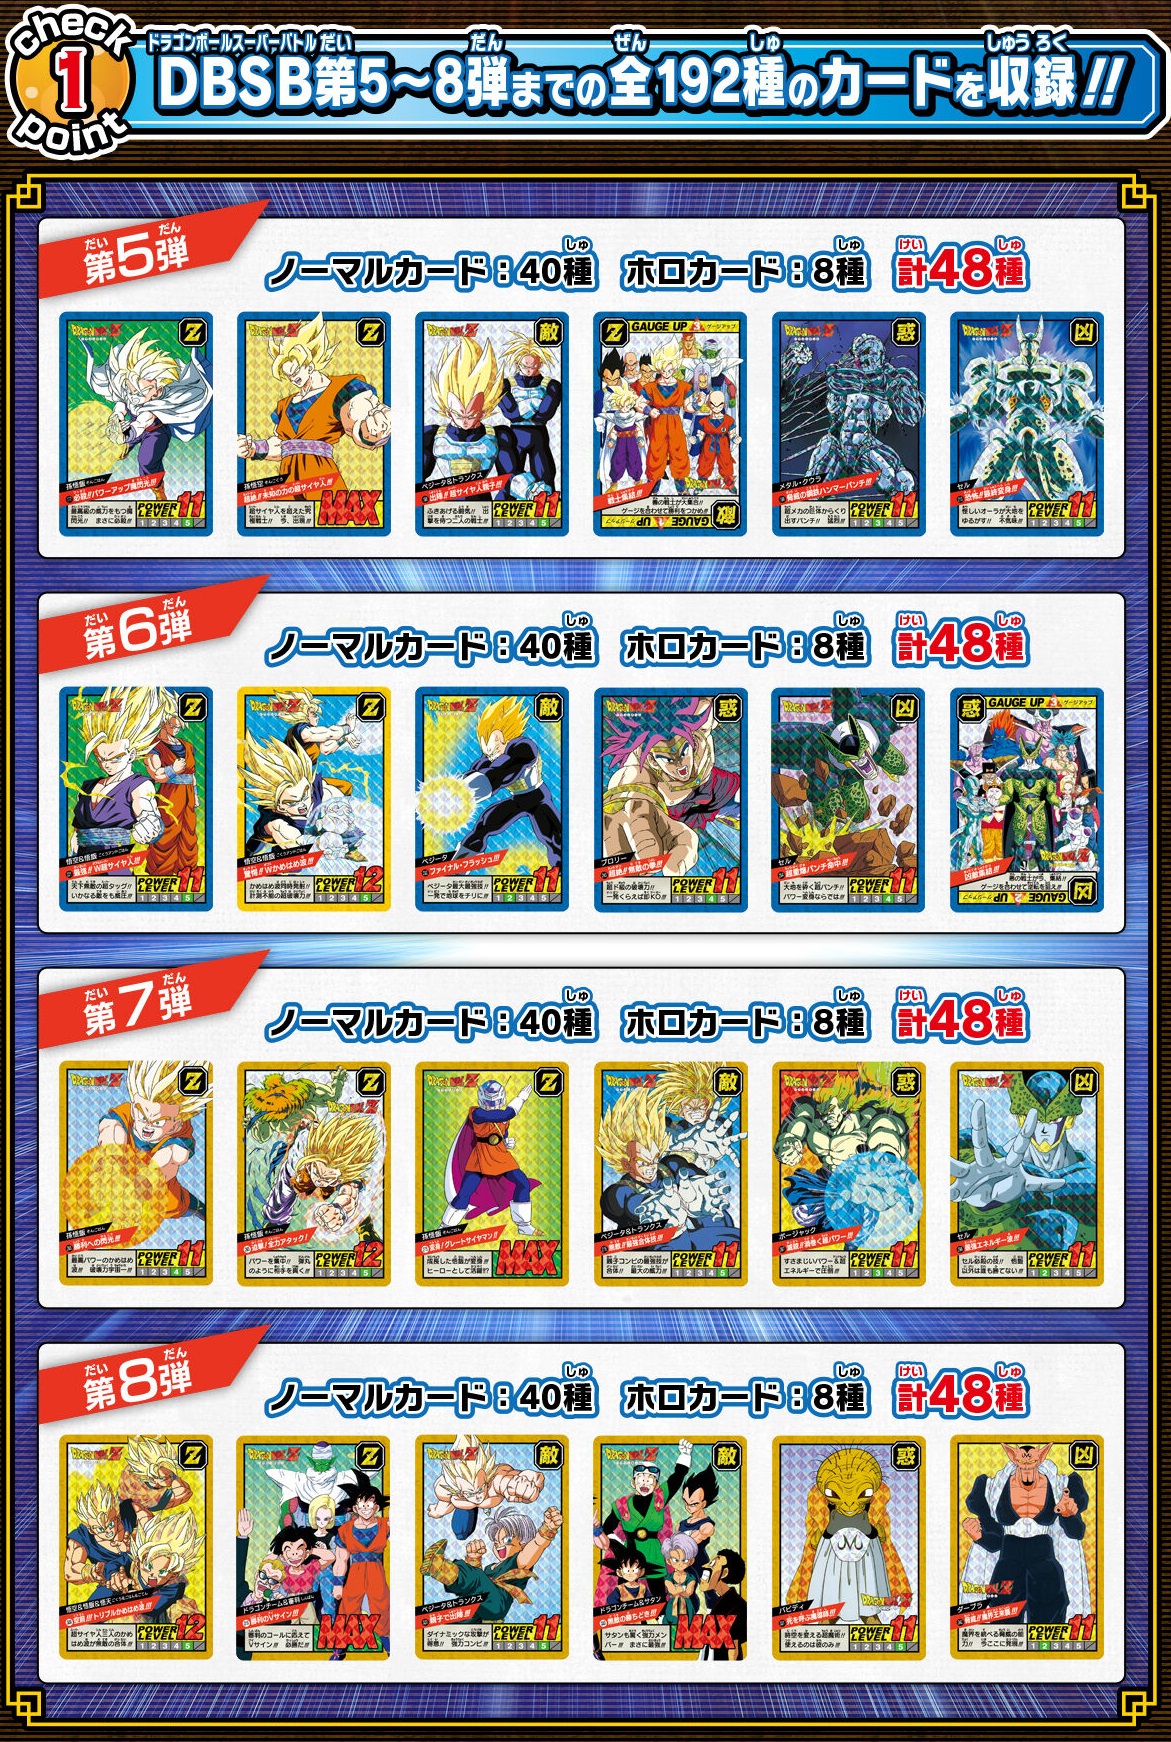 カードダス ドラゴンボール スーパーバトル Premium set Vol.2【商品仕様・画像 公開】今日(9日)11時よりプレミアムバンダイ